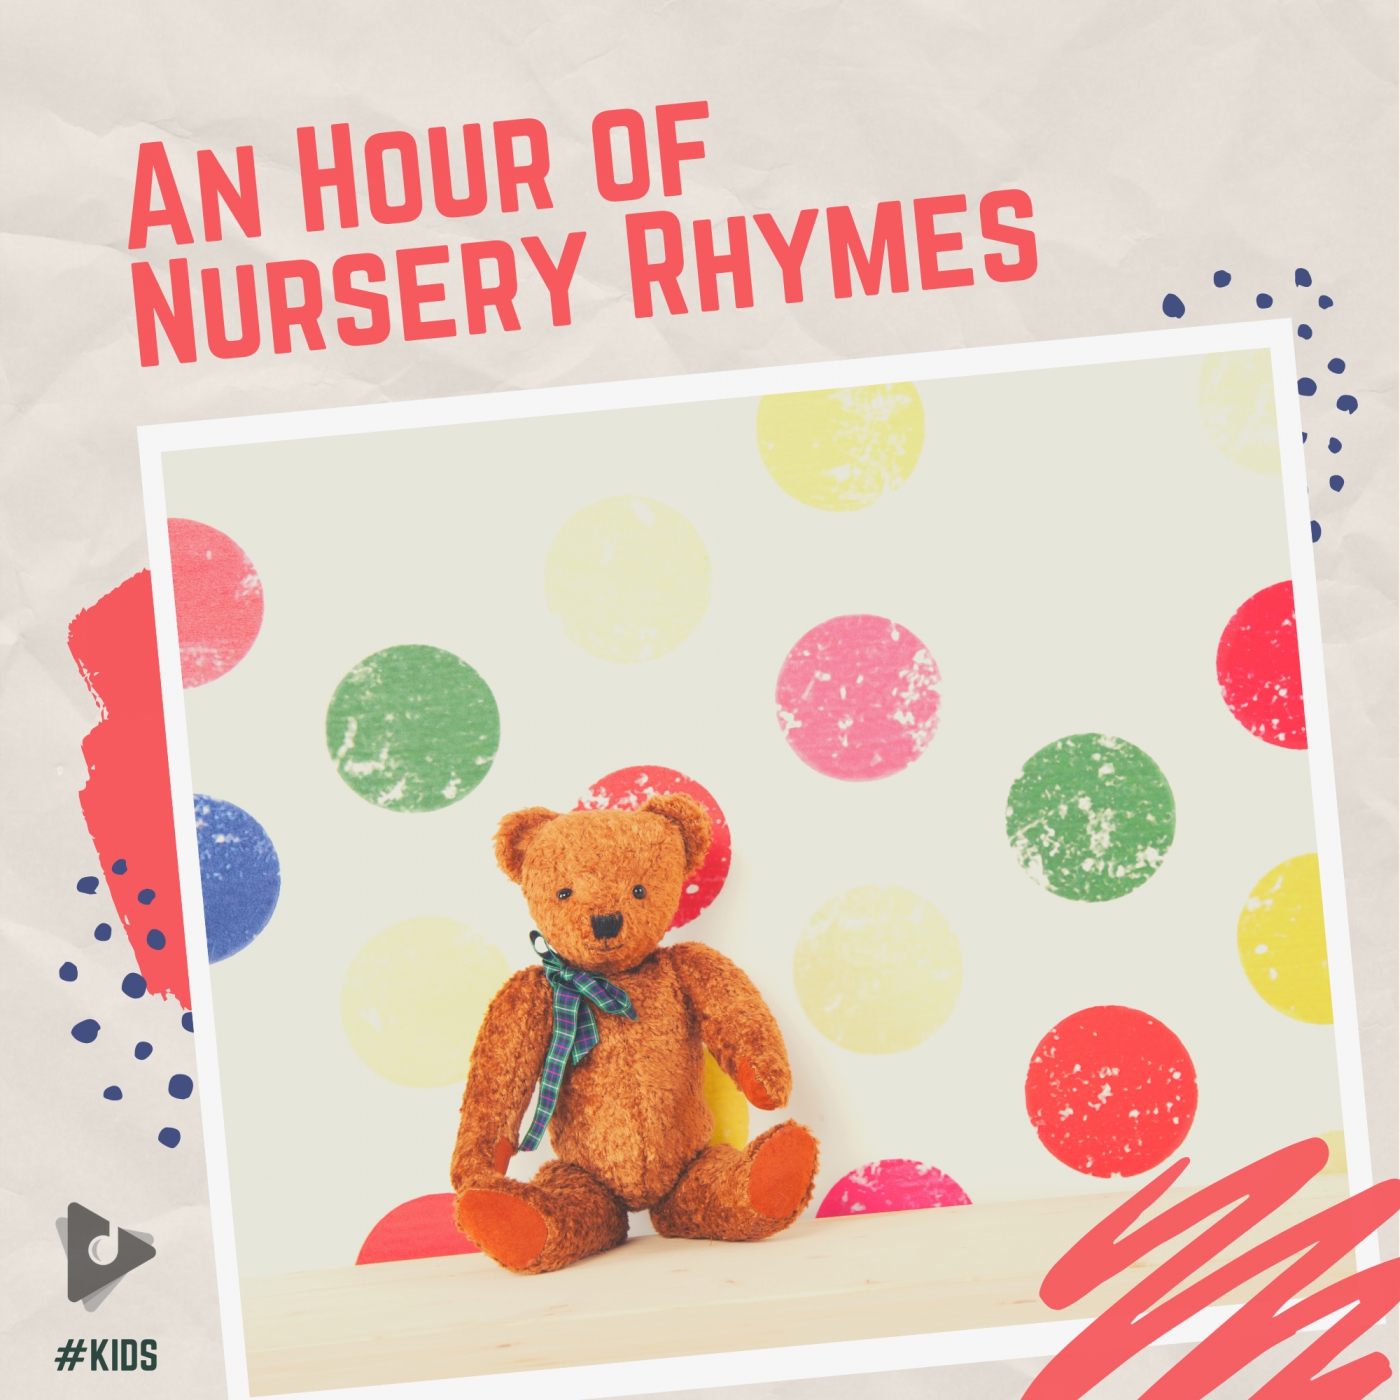 An Hour of Nursery Rhymes